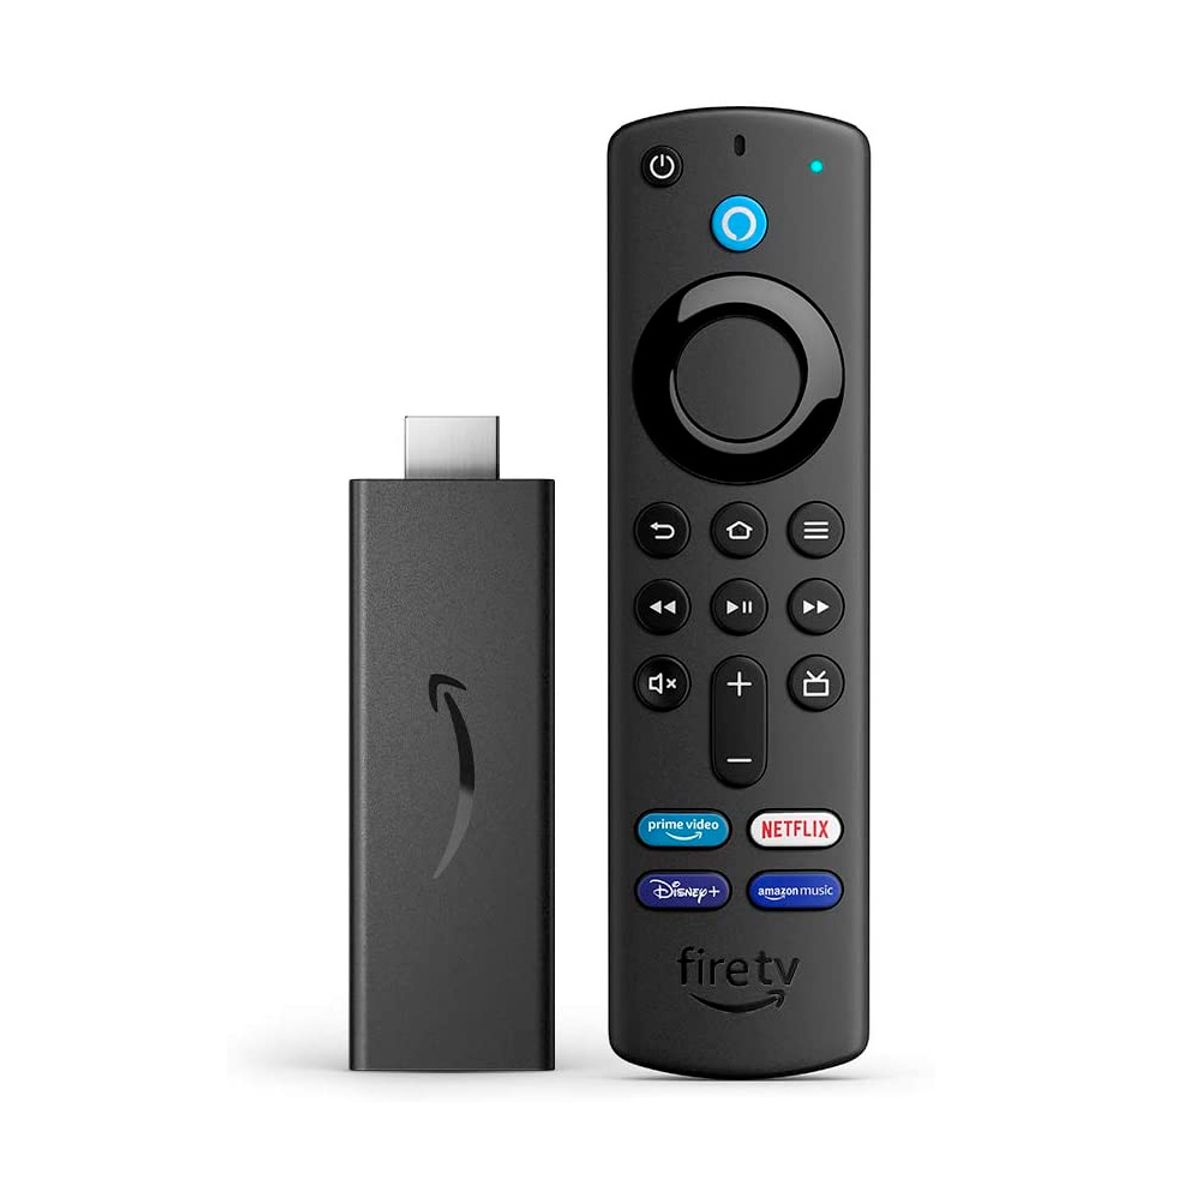 Netflix erro NW-2-5 no FireTV Stick (Resolvido) 